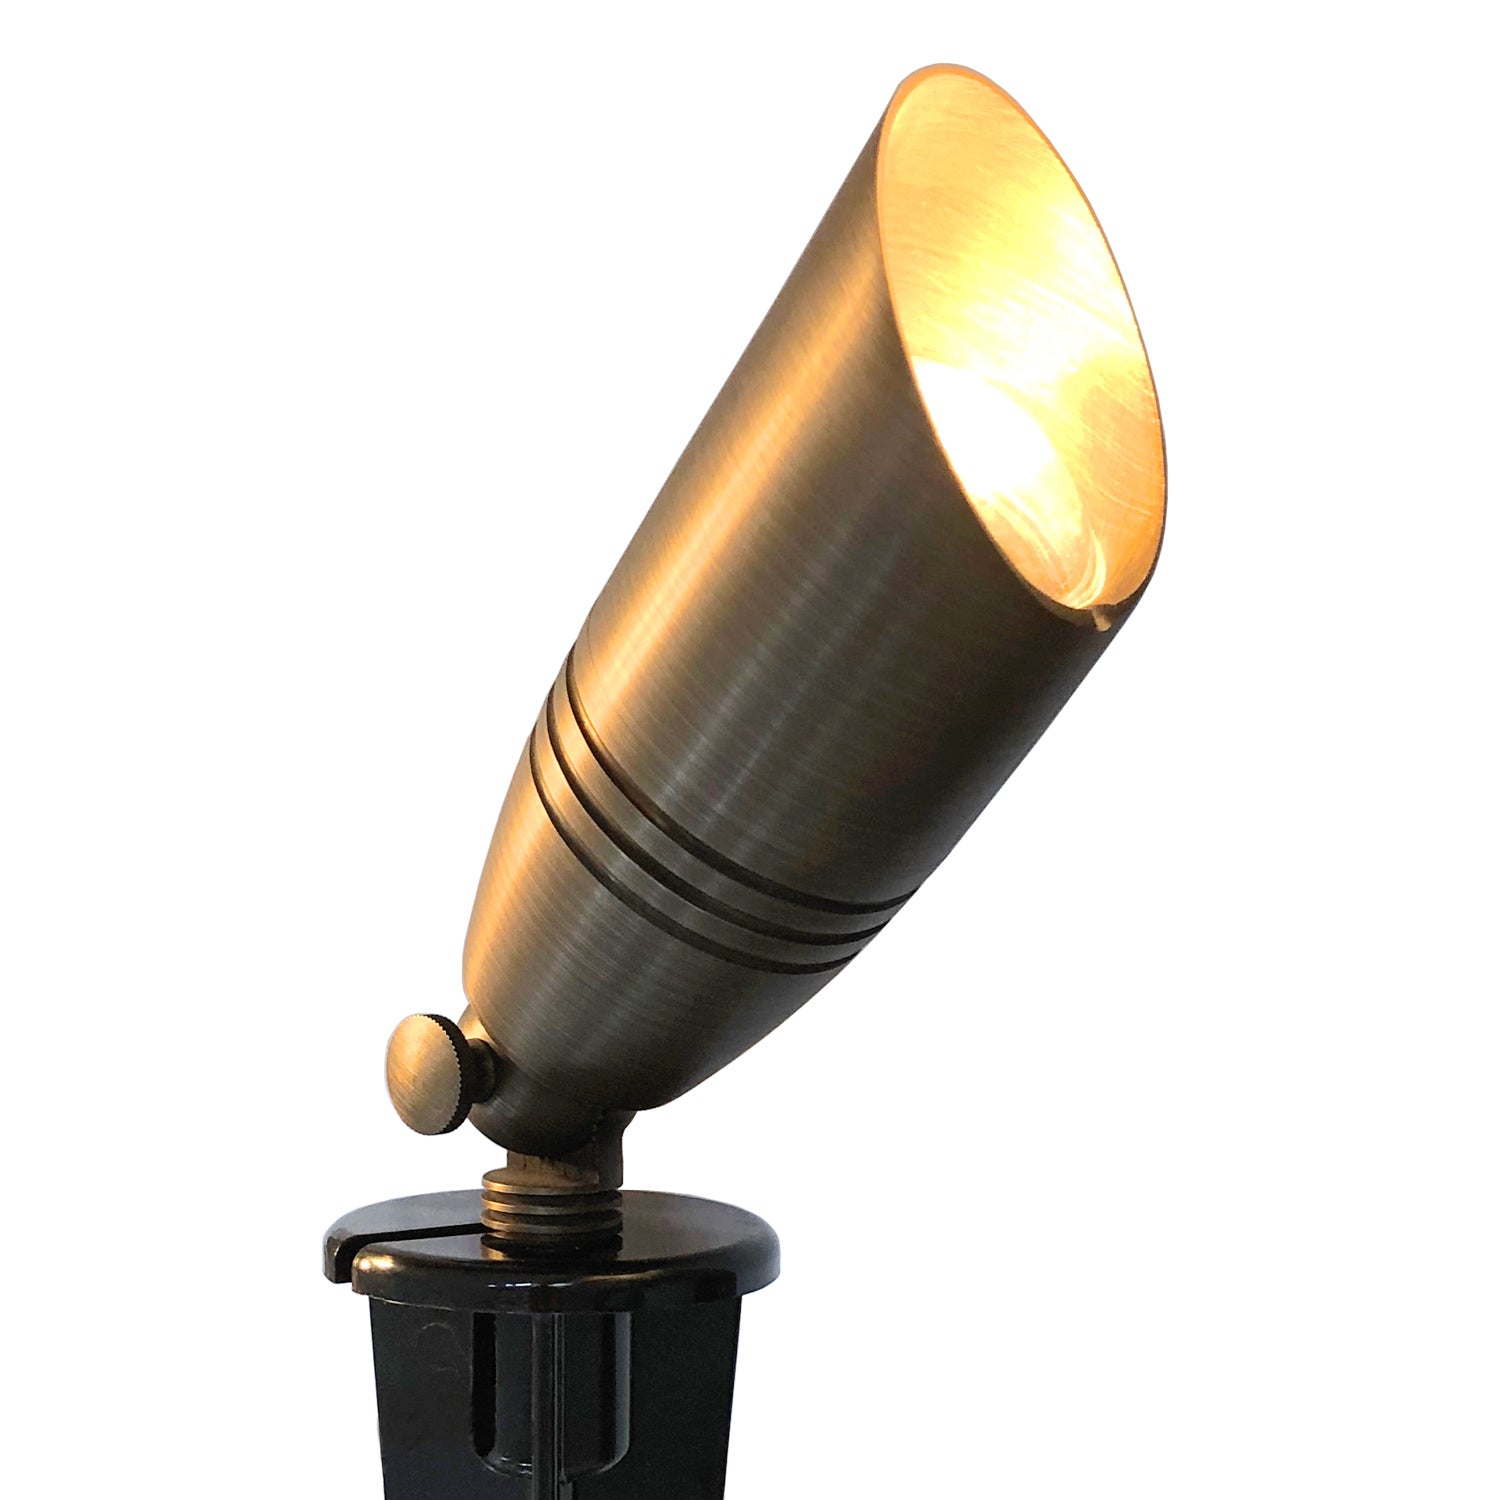 The Miner's Lamp - Low Voltage LED Landscape Light,12V AC/DC Lamp with –  LightAndTimeArt